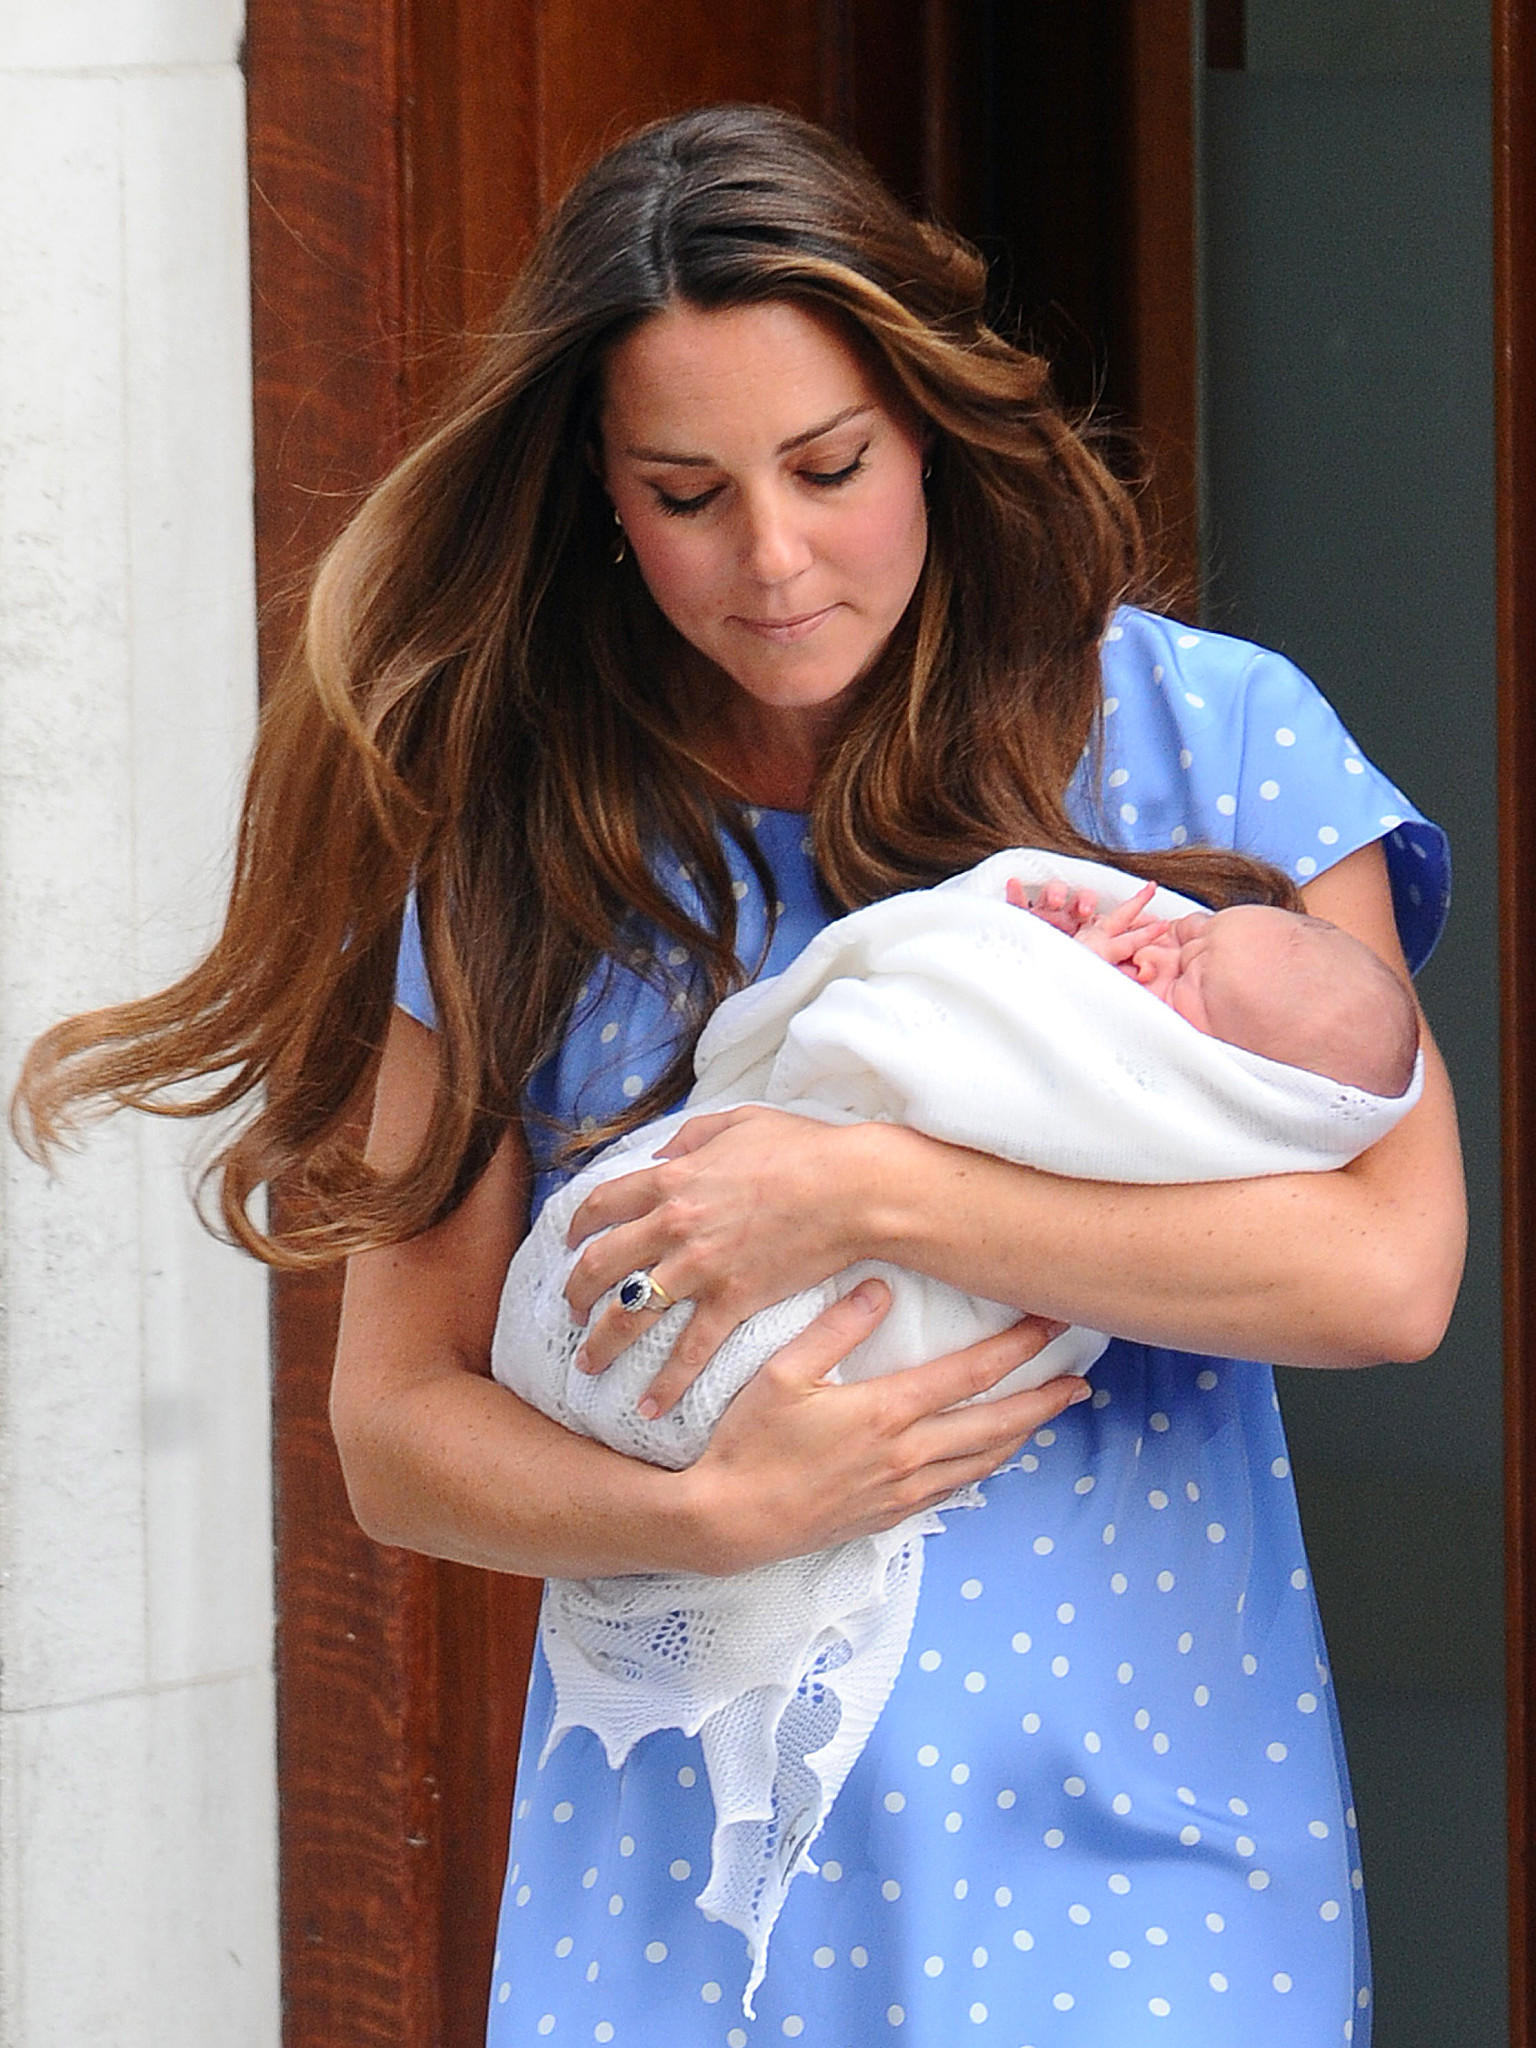 Catherine und William zeigen ihr Royal Baby